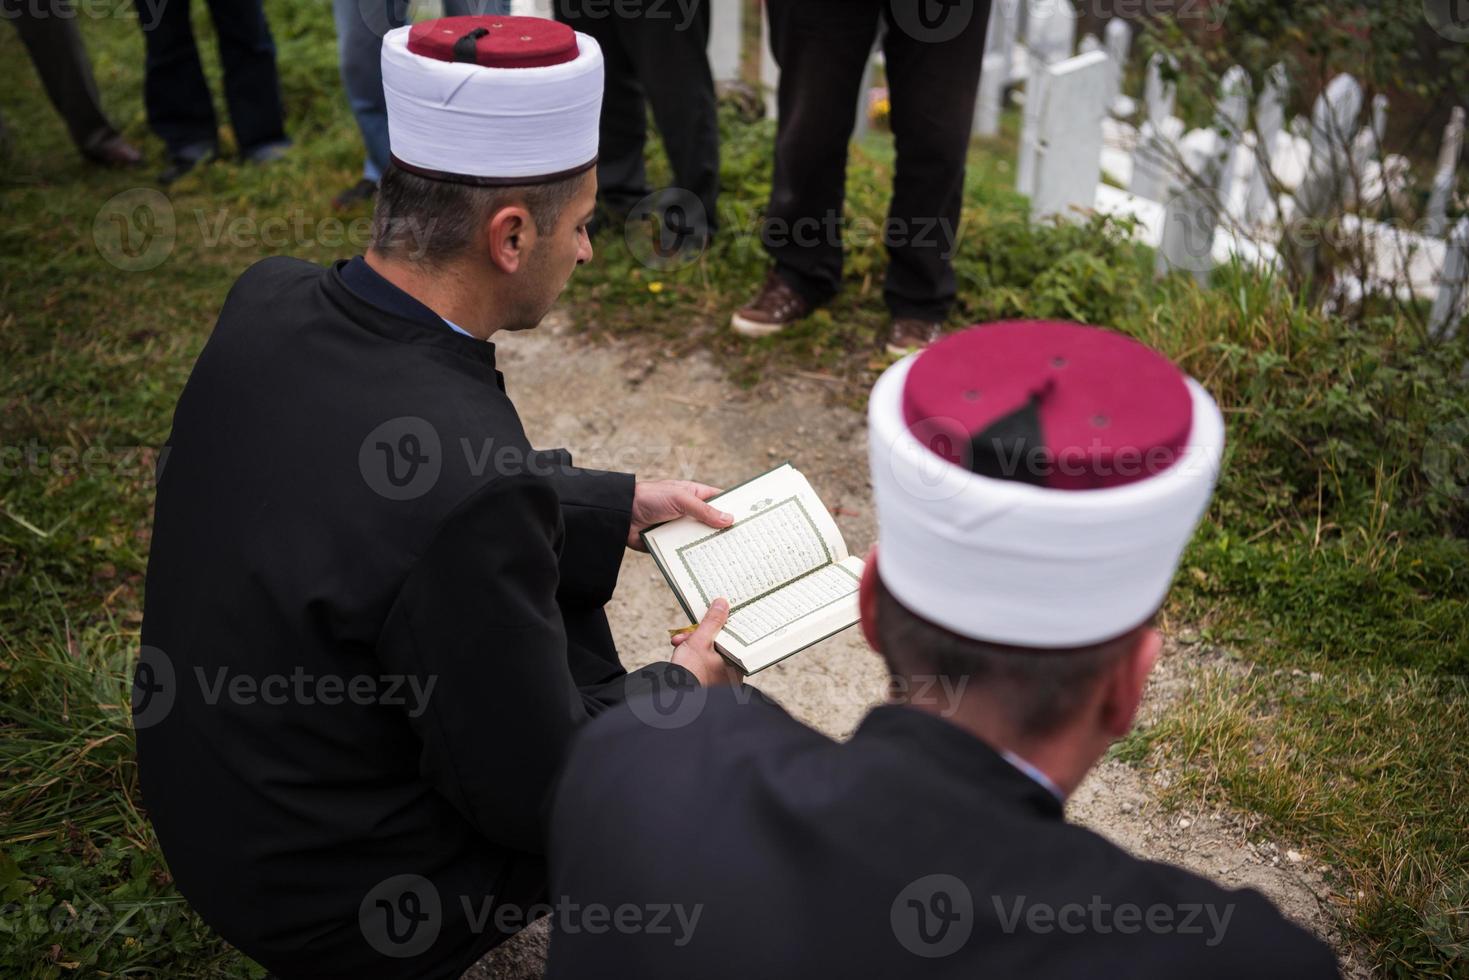 Corano santo libro lettura di imam su islamico funerale foto